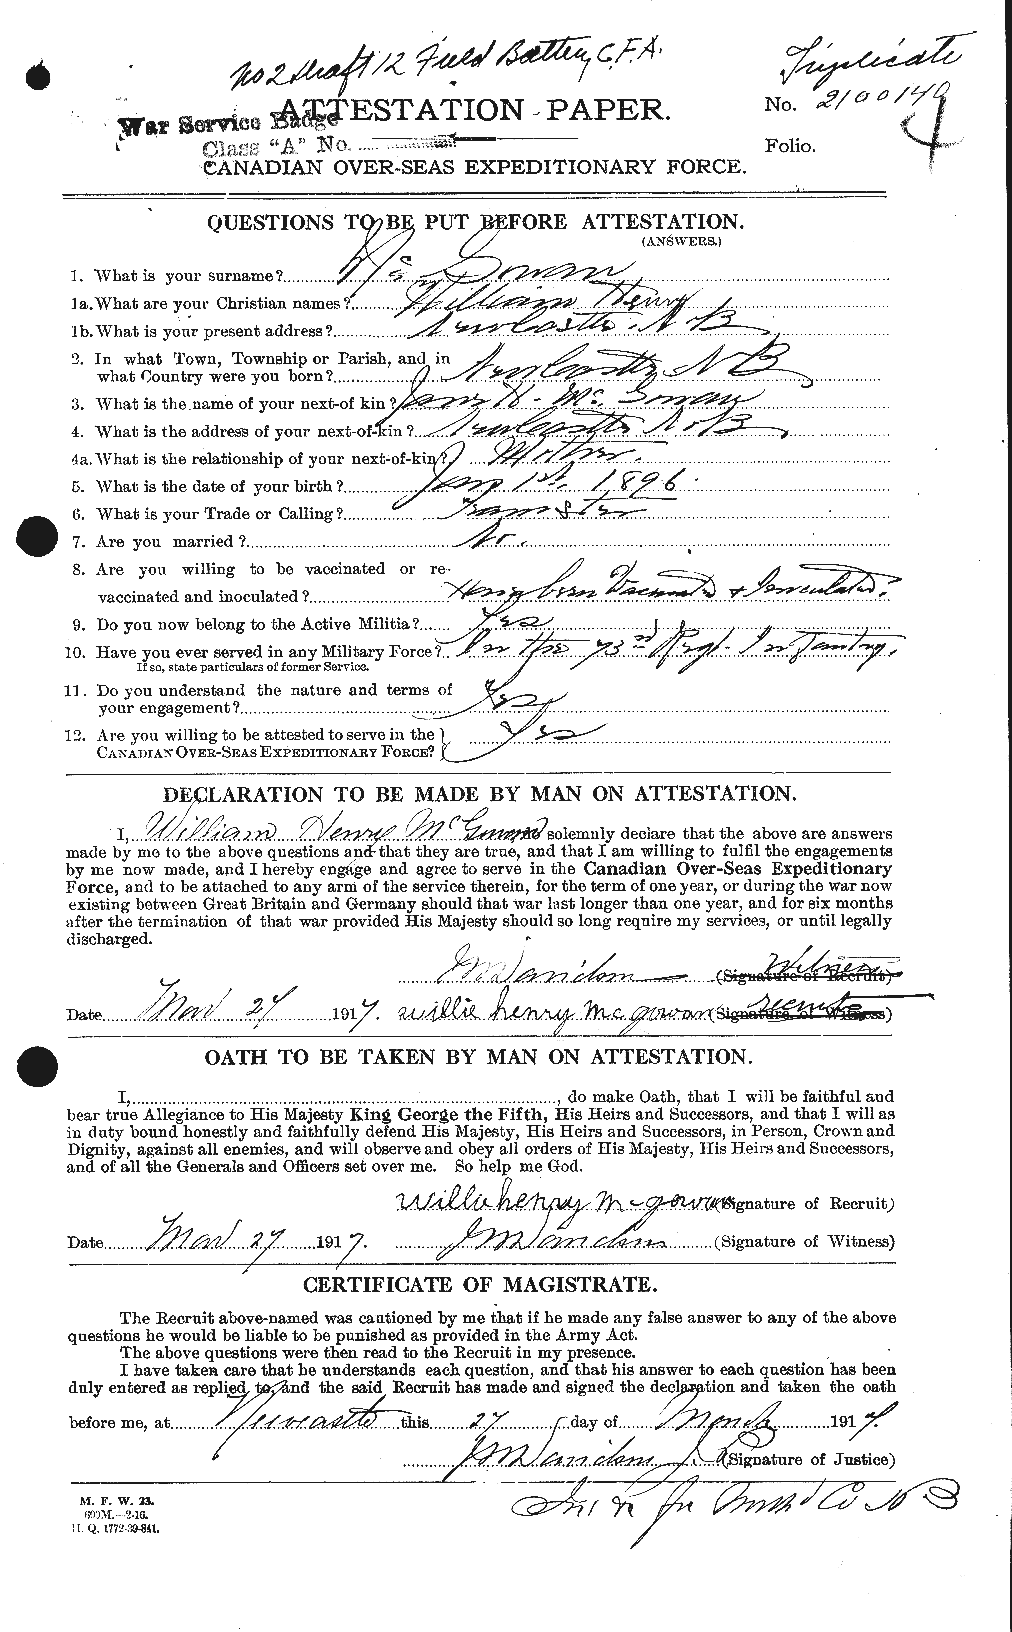 Dossiers du Personnel de la Première Guerre mondiale - CEC 523241a